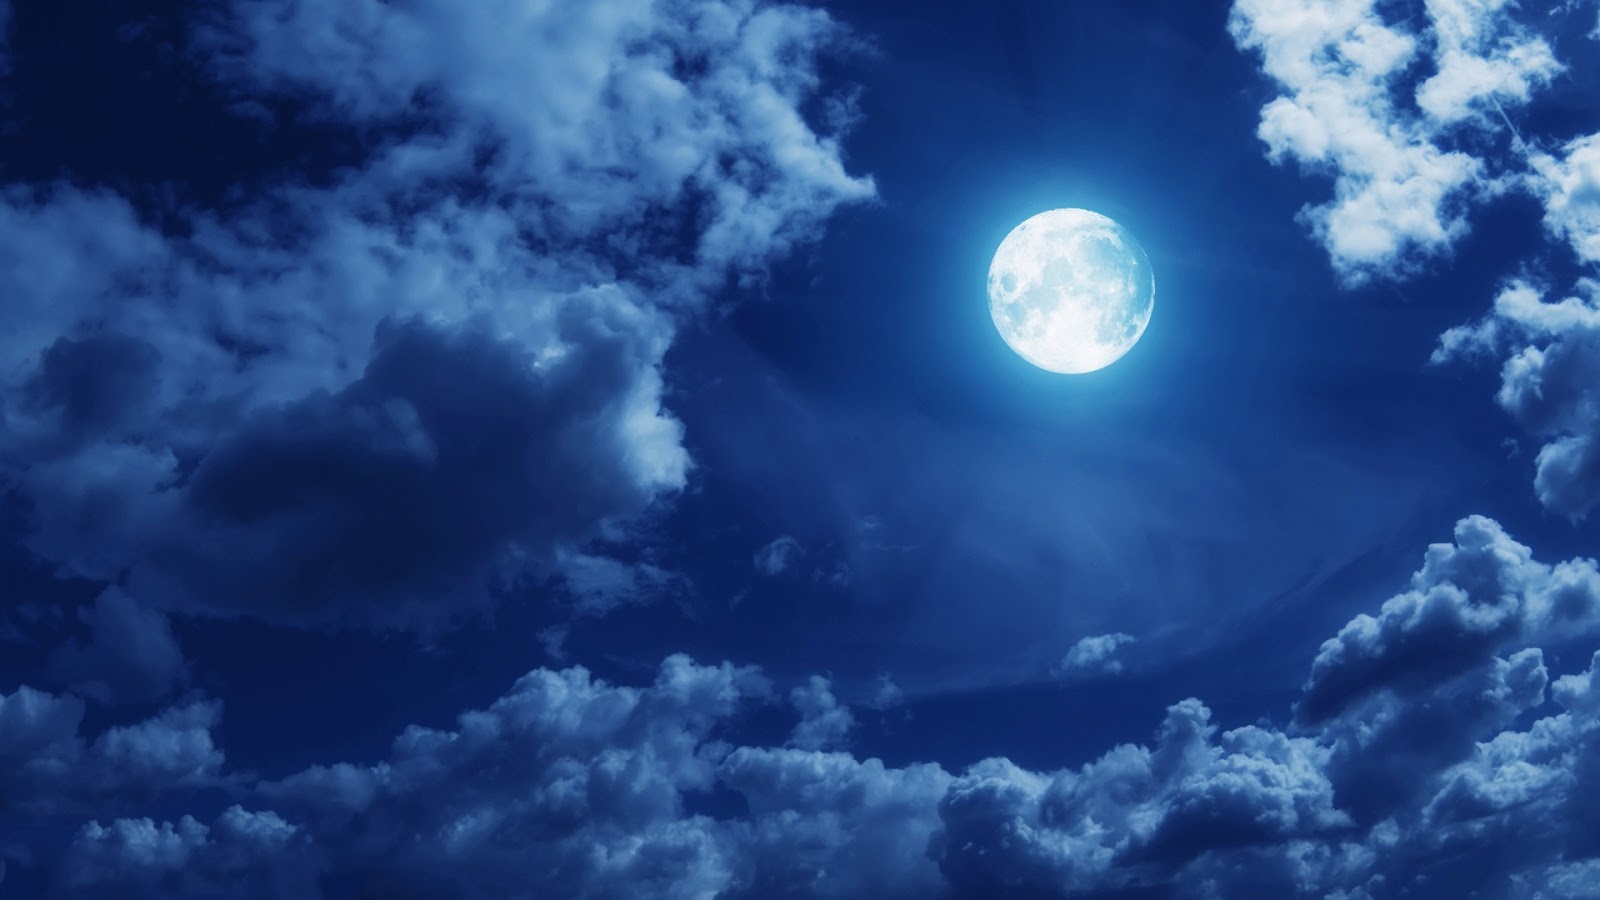 http://2.bp.blogspot.com/-pbrDYPpzHWQ/UMGrC4t0WFI/AAAAAAAAJes/RSmmhUi4cgM/s1600/clouds-full-moon.jpg